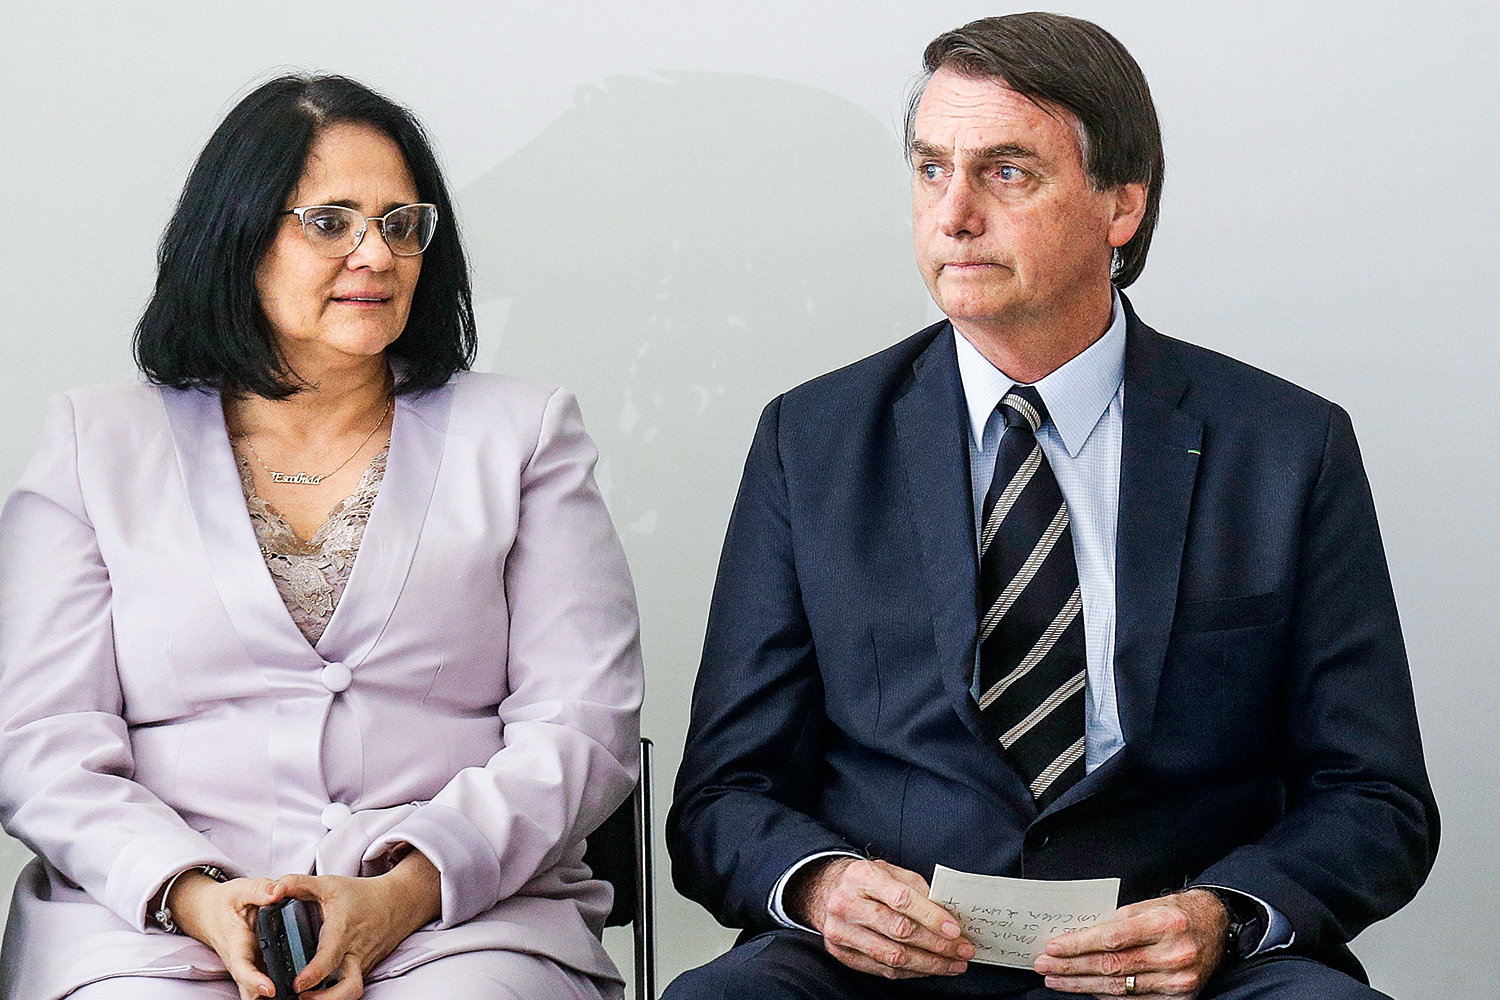 Governo Bolsonaro será alvo de "tsunami" de denúncias internacionais na ONU